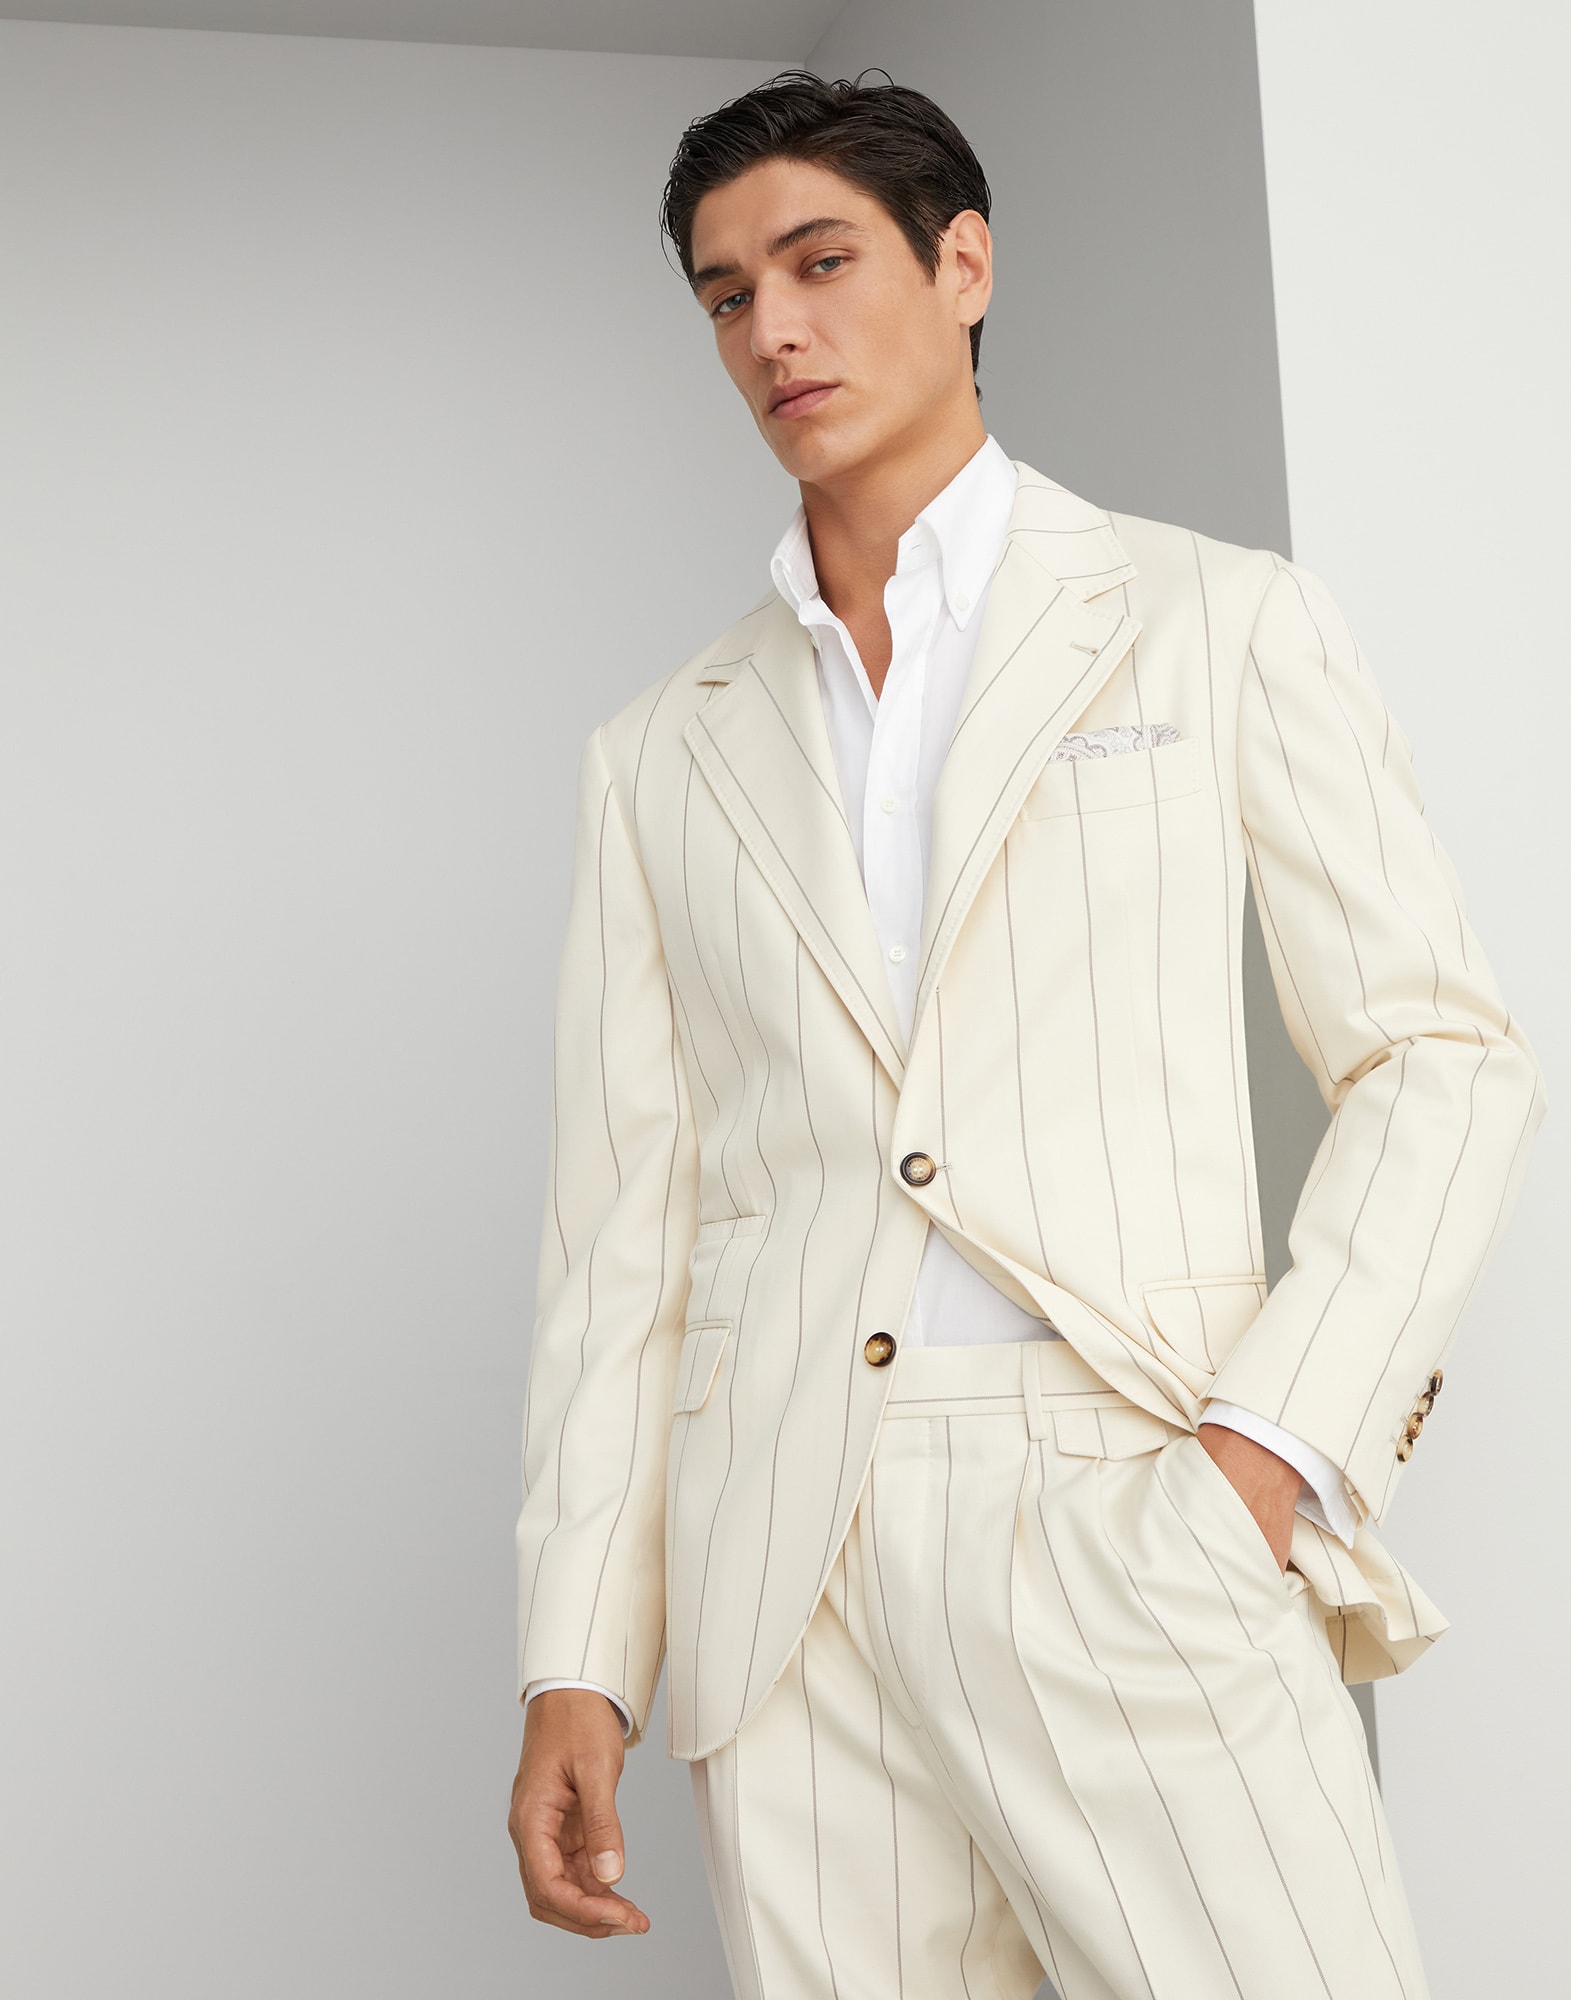 Бесподкладочный пиджак Коричневый Мужчина - Brunello Cucinelli